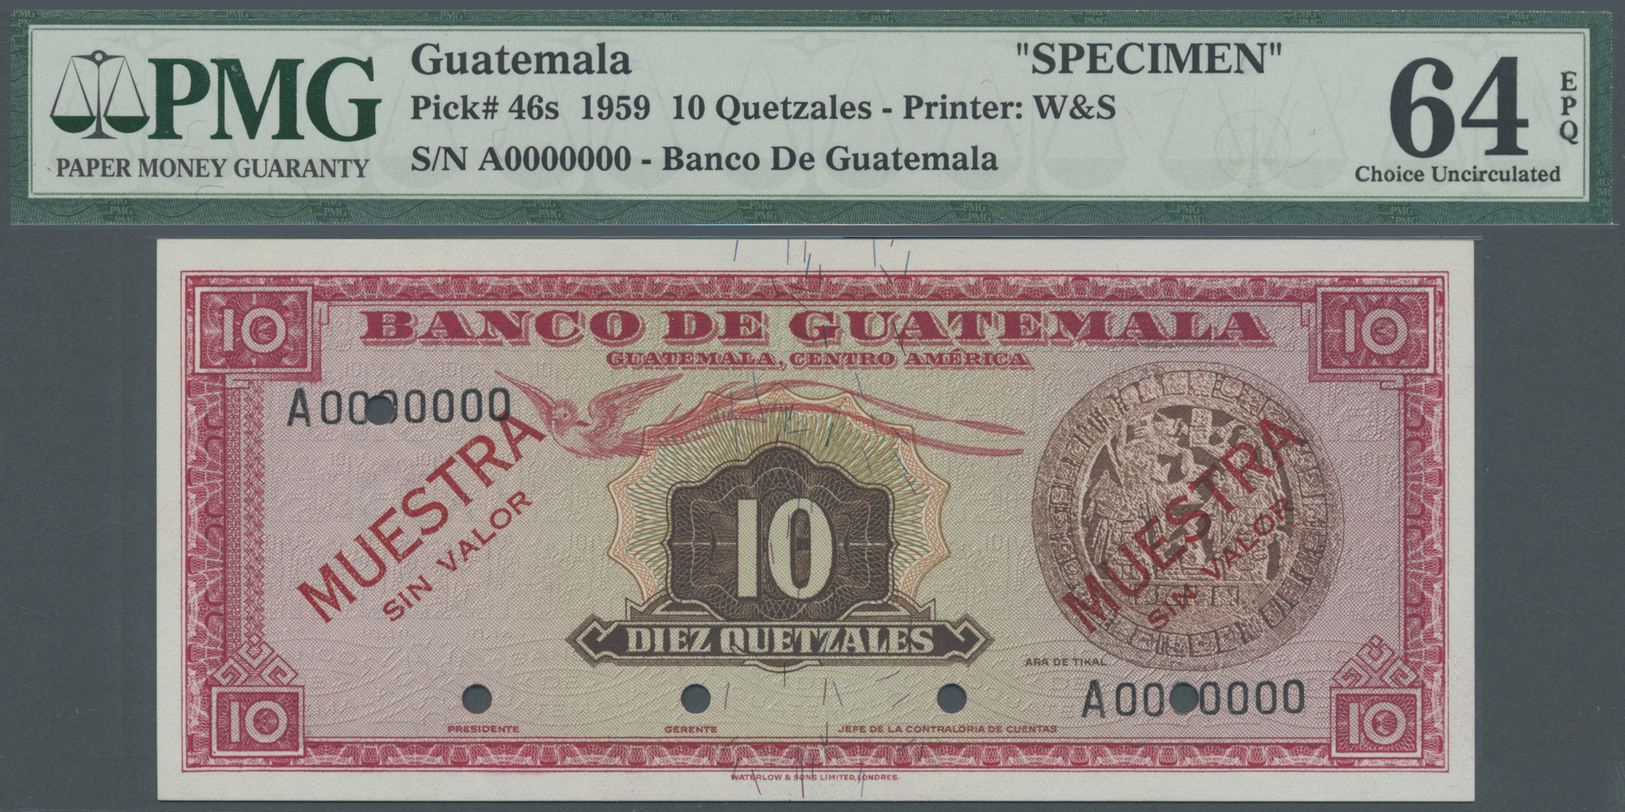 00964 Guatemala: Banco De Guatemala 10 Quetzales 1959 SPECIMEN, P.46s In Almost Perfect Condition, PMG Graded 64 Choice - Guatemala